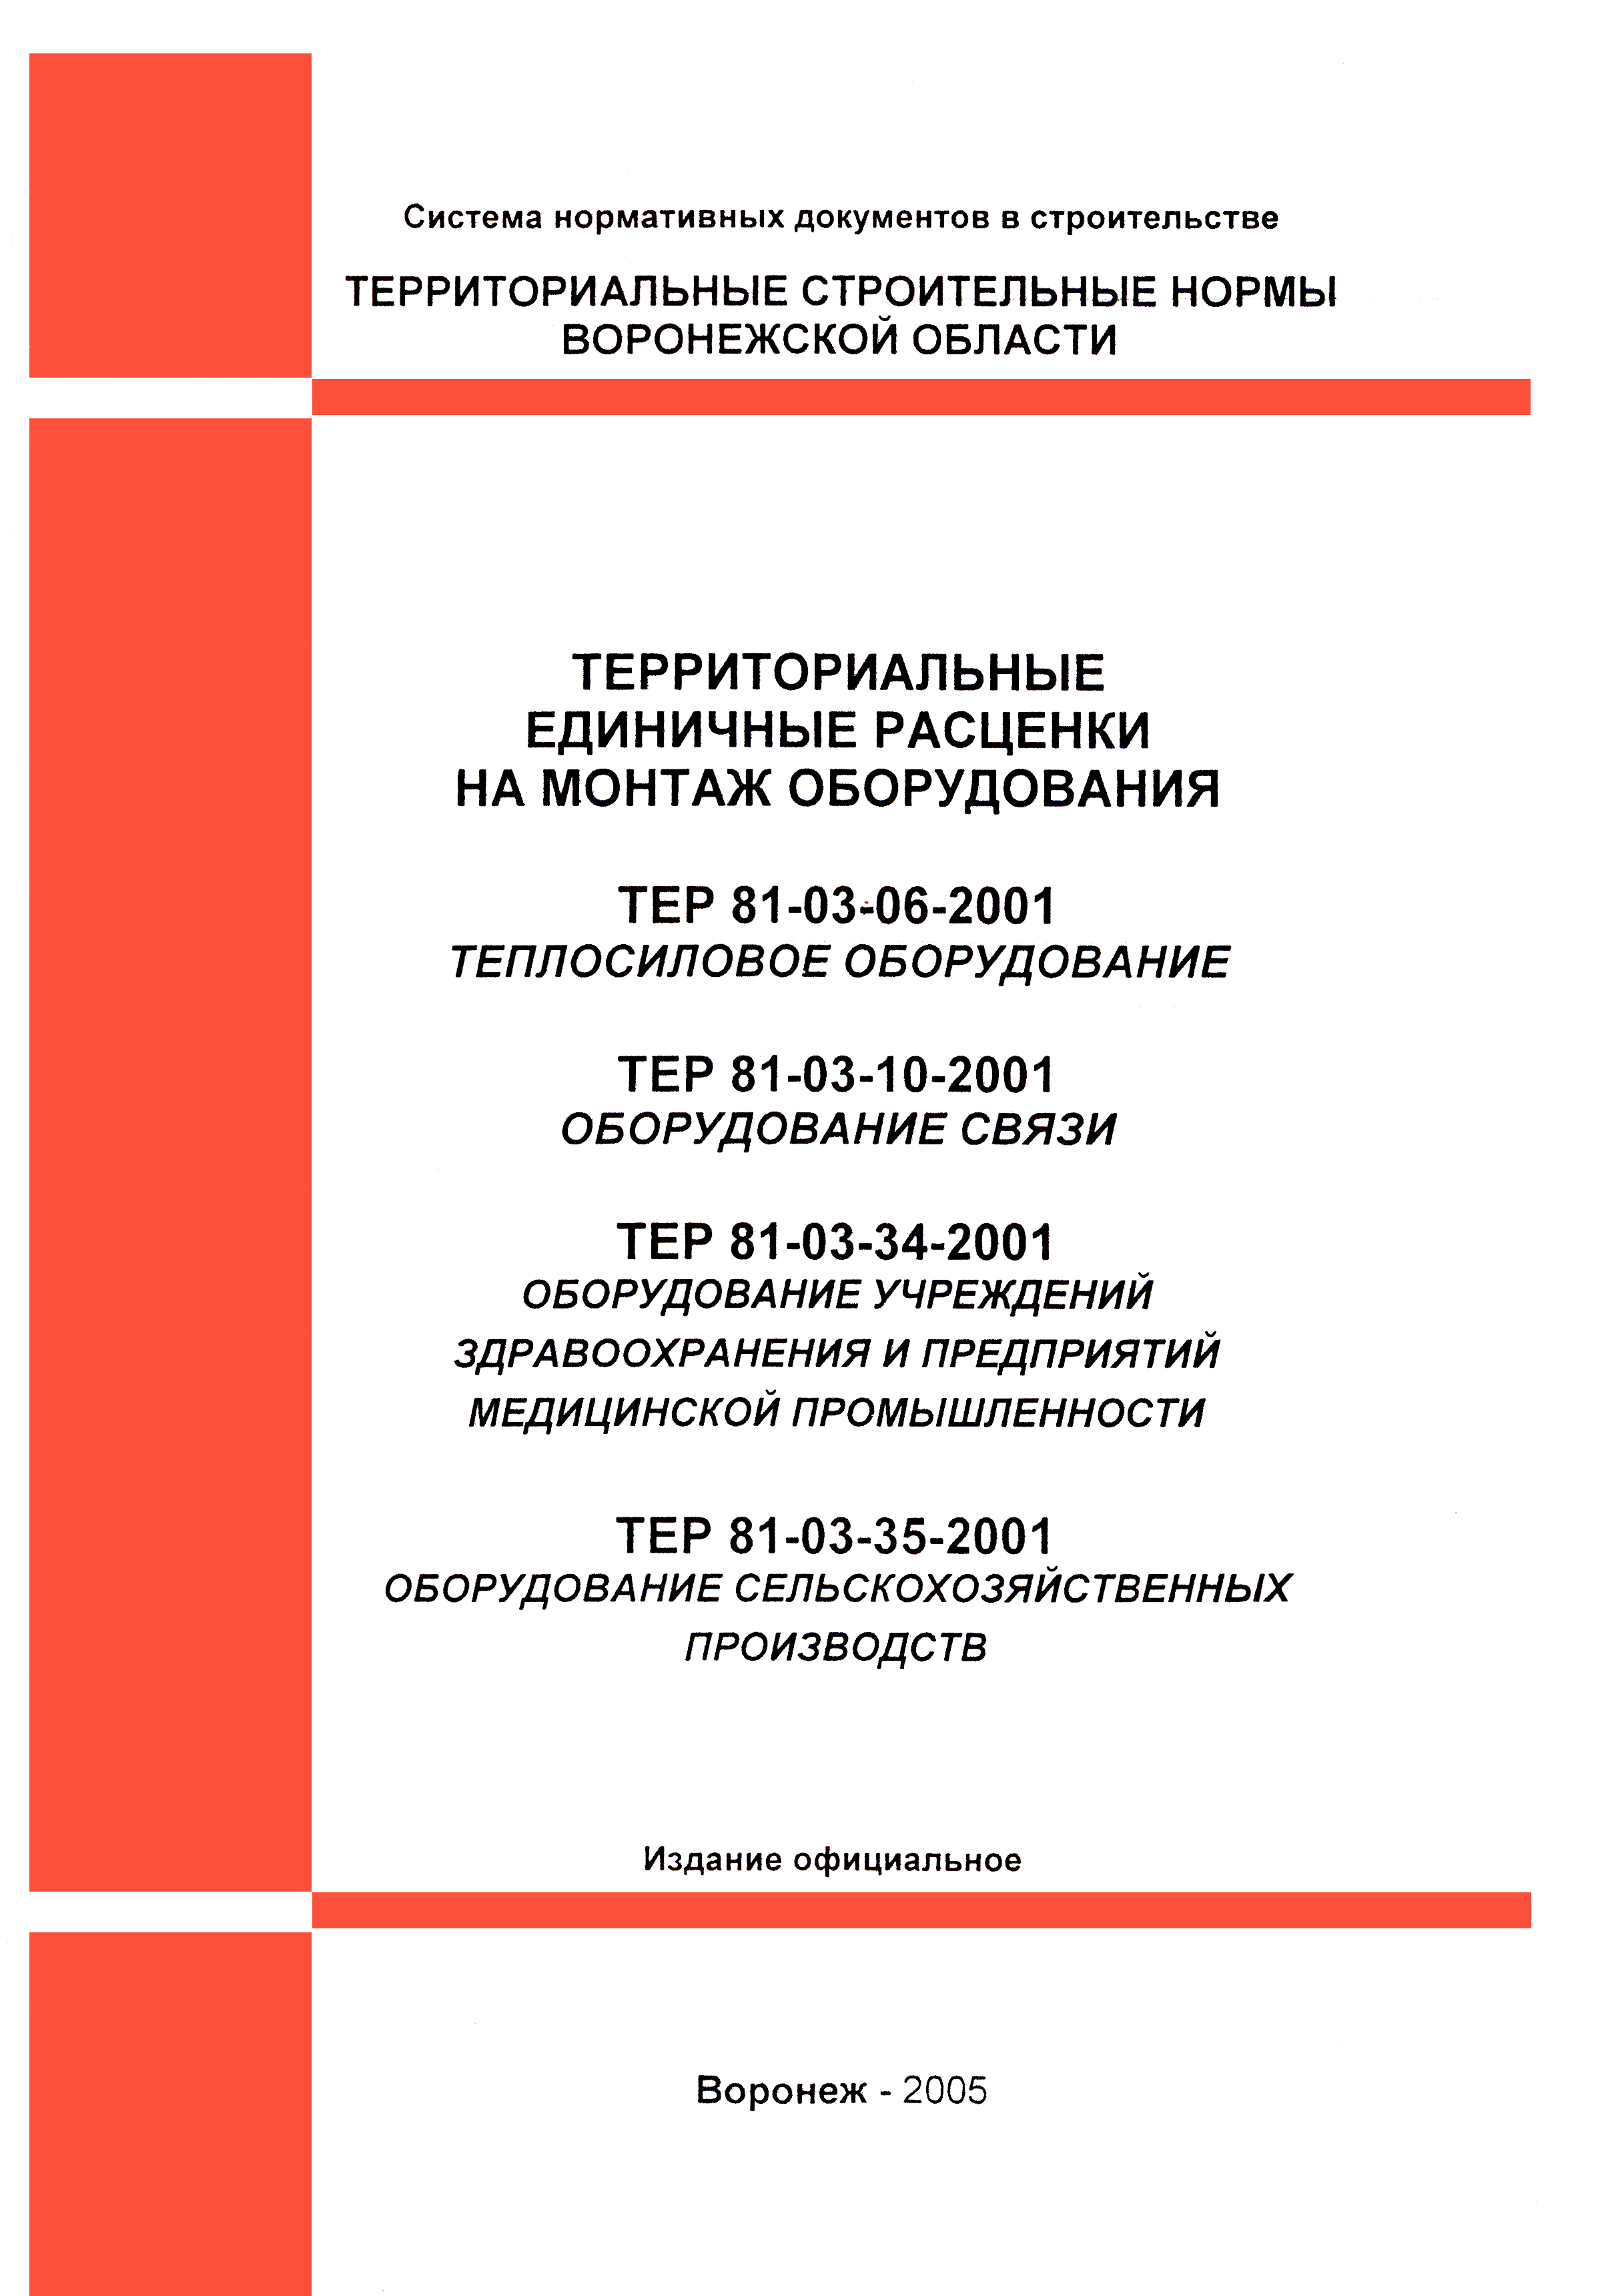 ТЕРм Воронежская область 81-03-35-2001